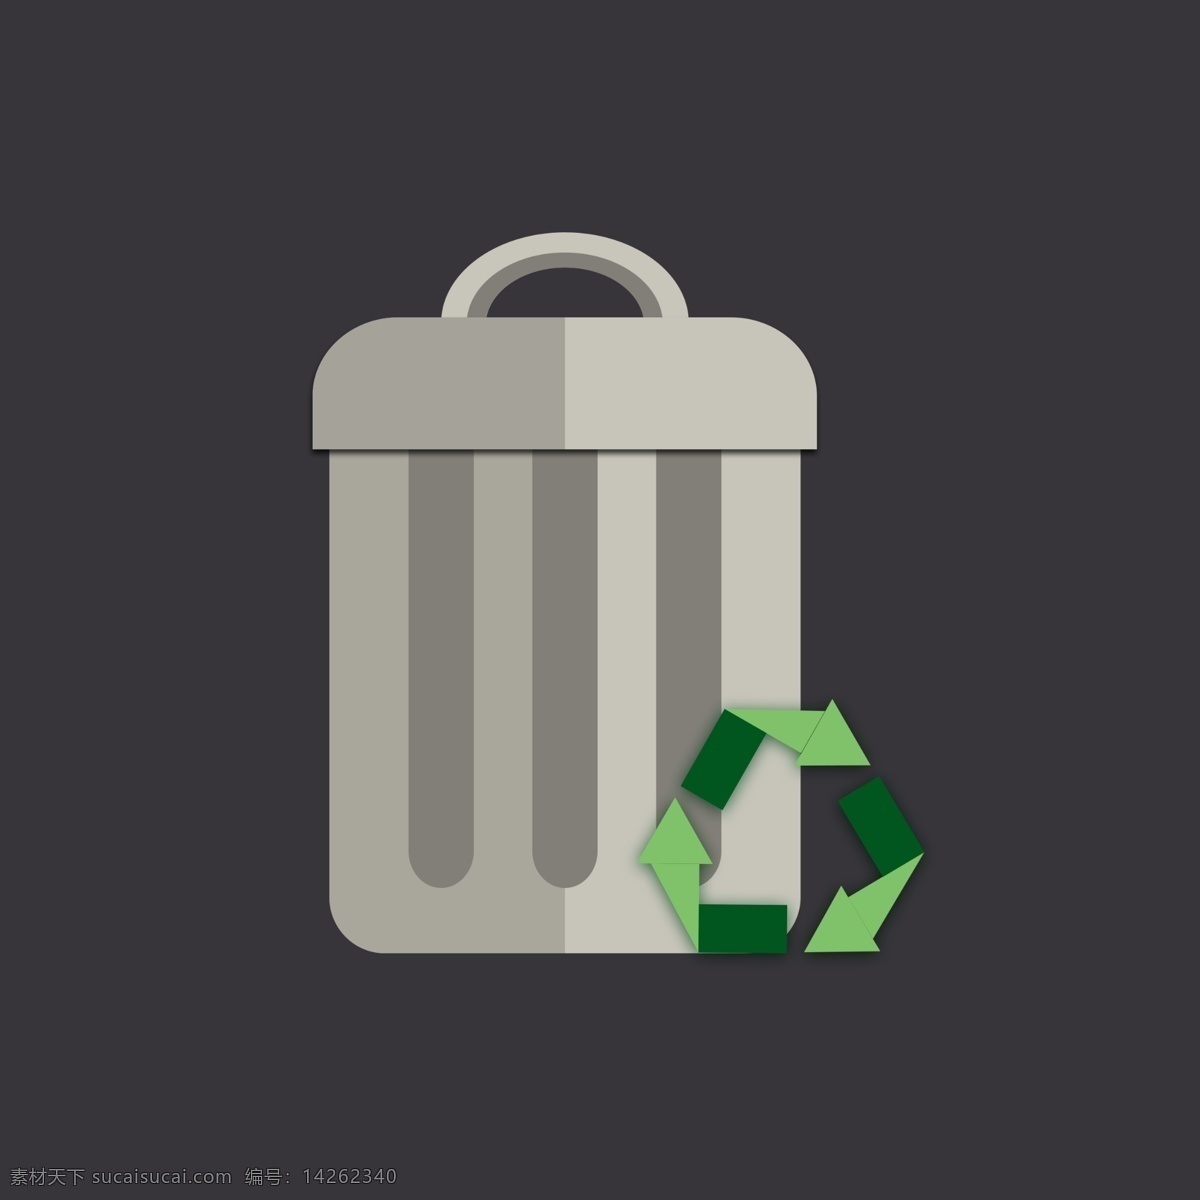 回收站 logo 垃圾桶 icon 扁平化 图标 垃圾站 图案 回收标志 回收logo